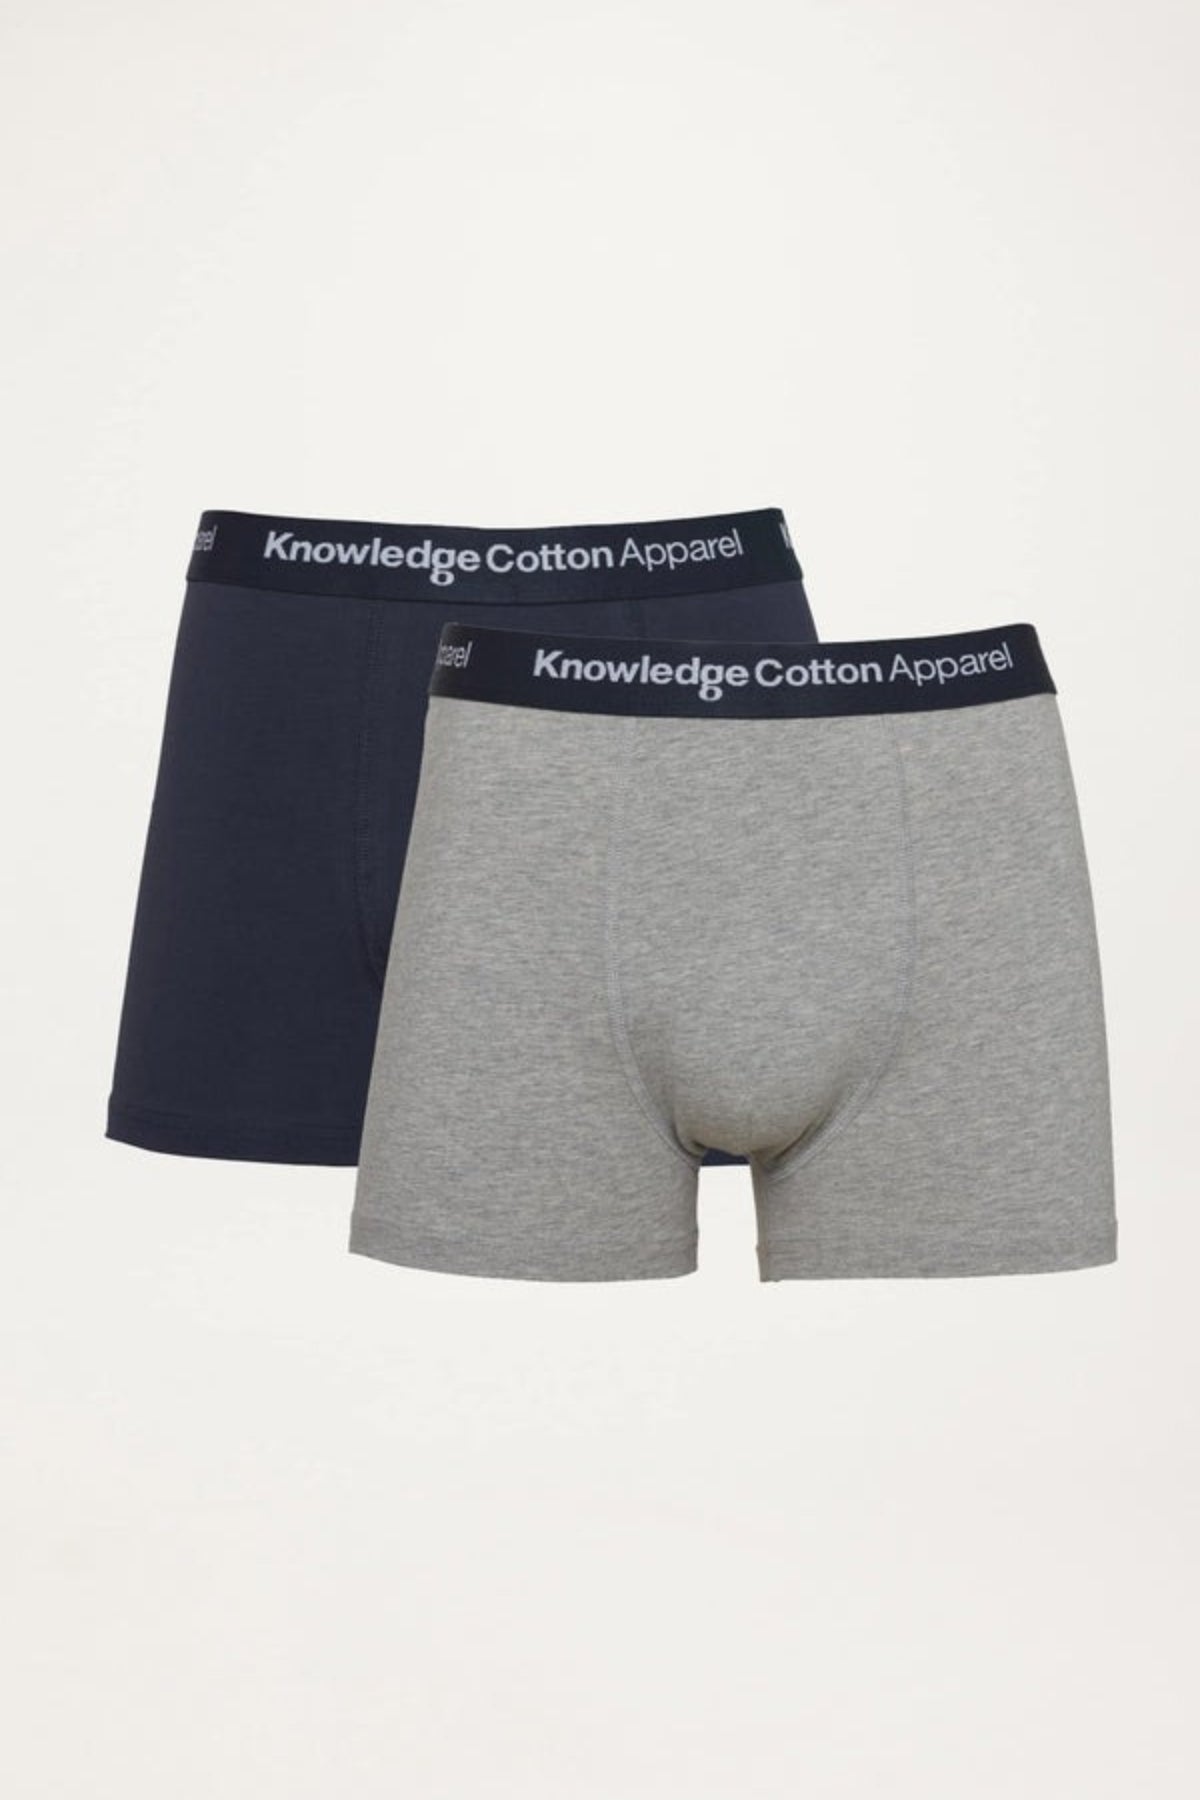 2 pack underwear - Knowledge Cotton Apparel